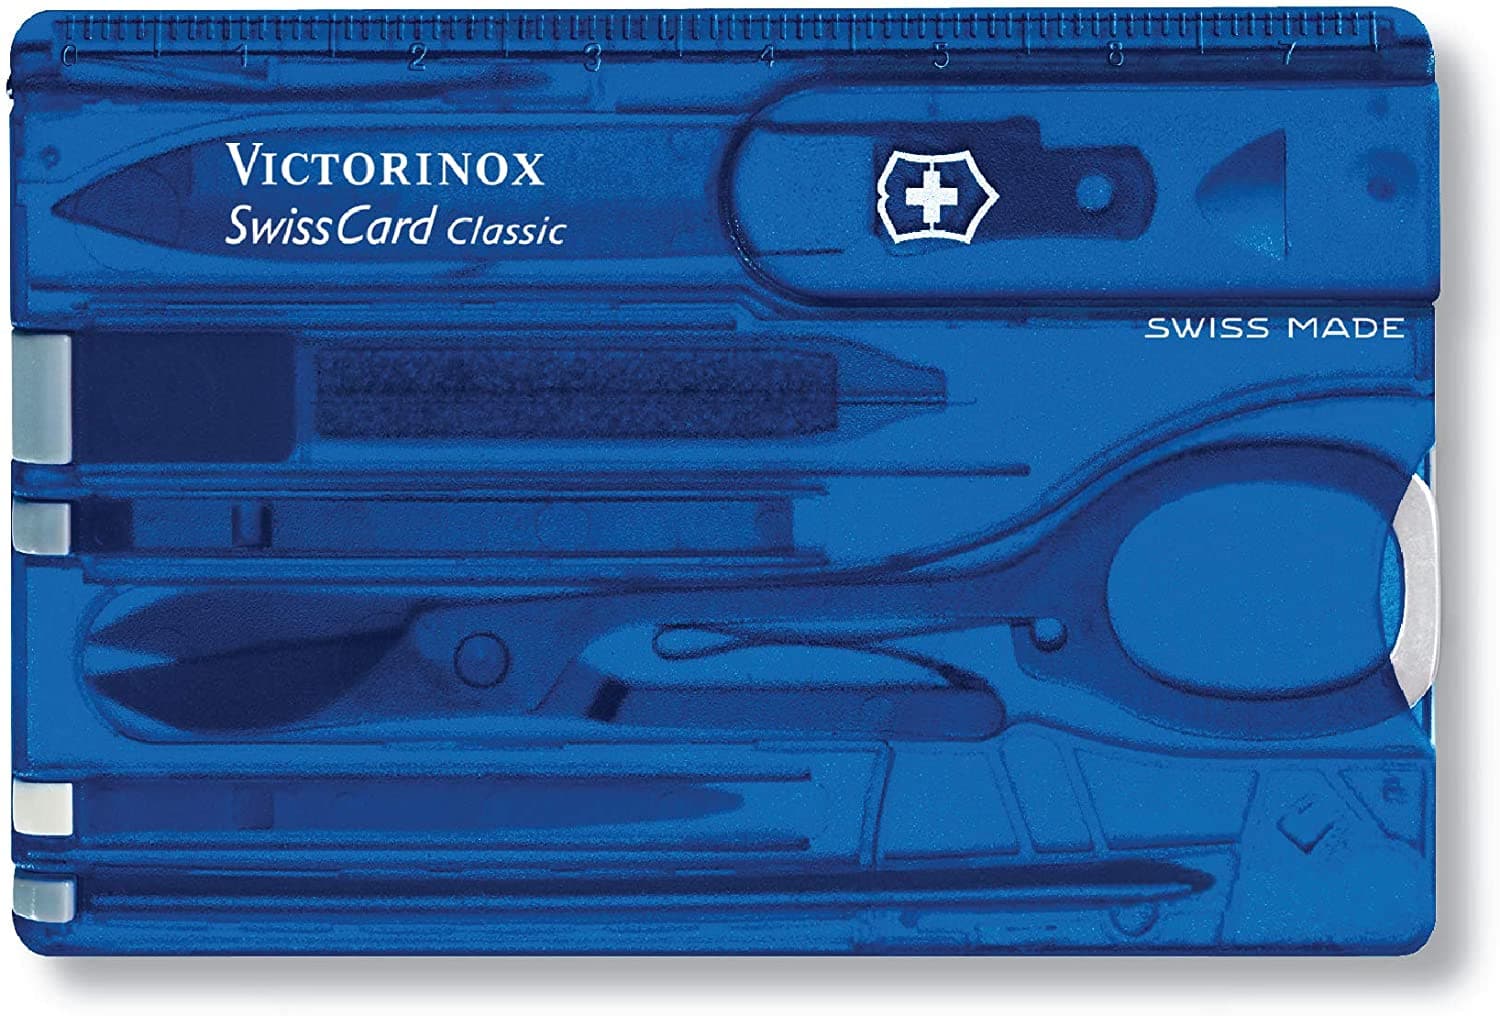 فيكتورينوكس سويسري الجيش سكين كلاسيكي سويس كارد سافير شفاف 82 مم مع 9 وظائف - 0.7122.T2